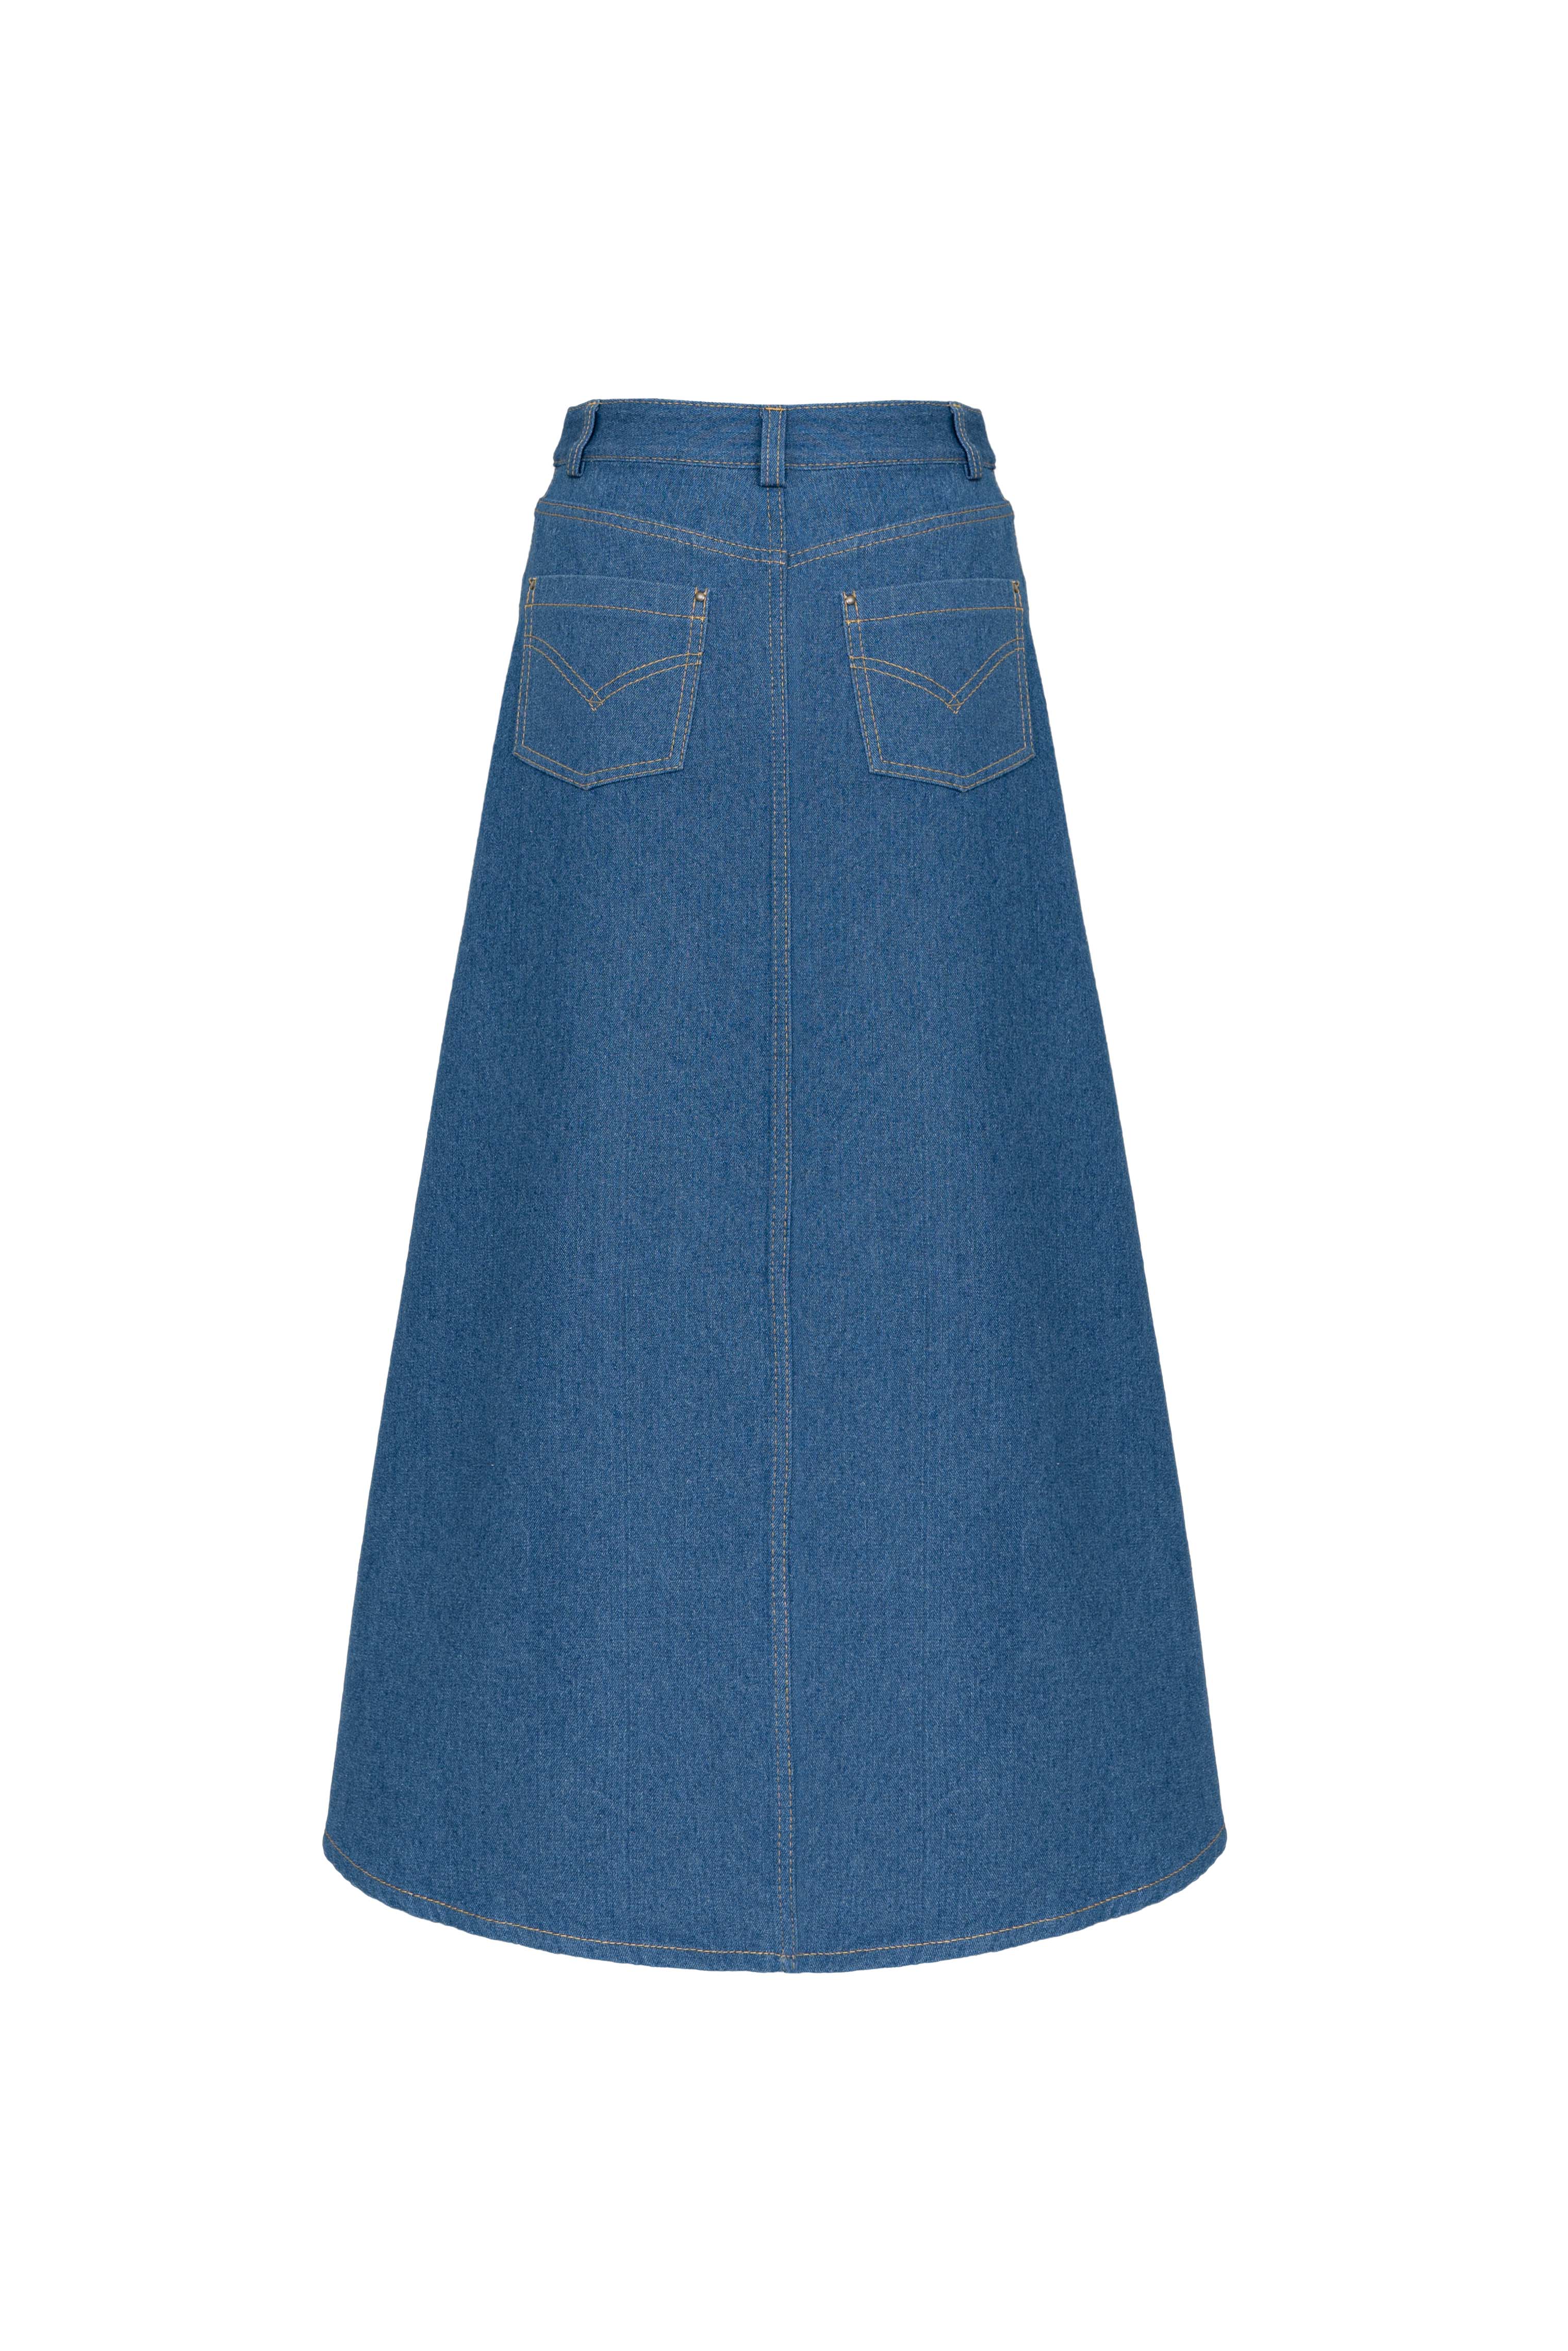 Skirt 4794-25 Dark blue from BRUSNiKA